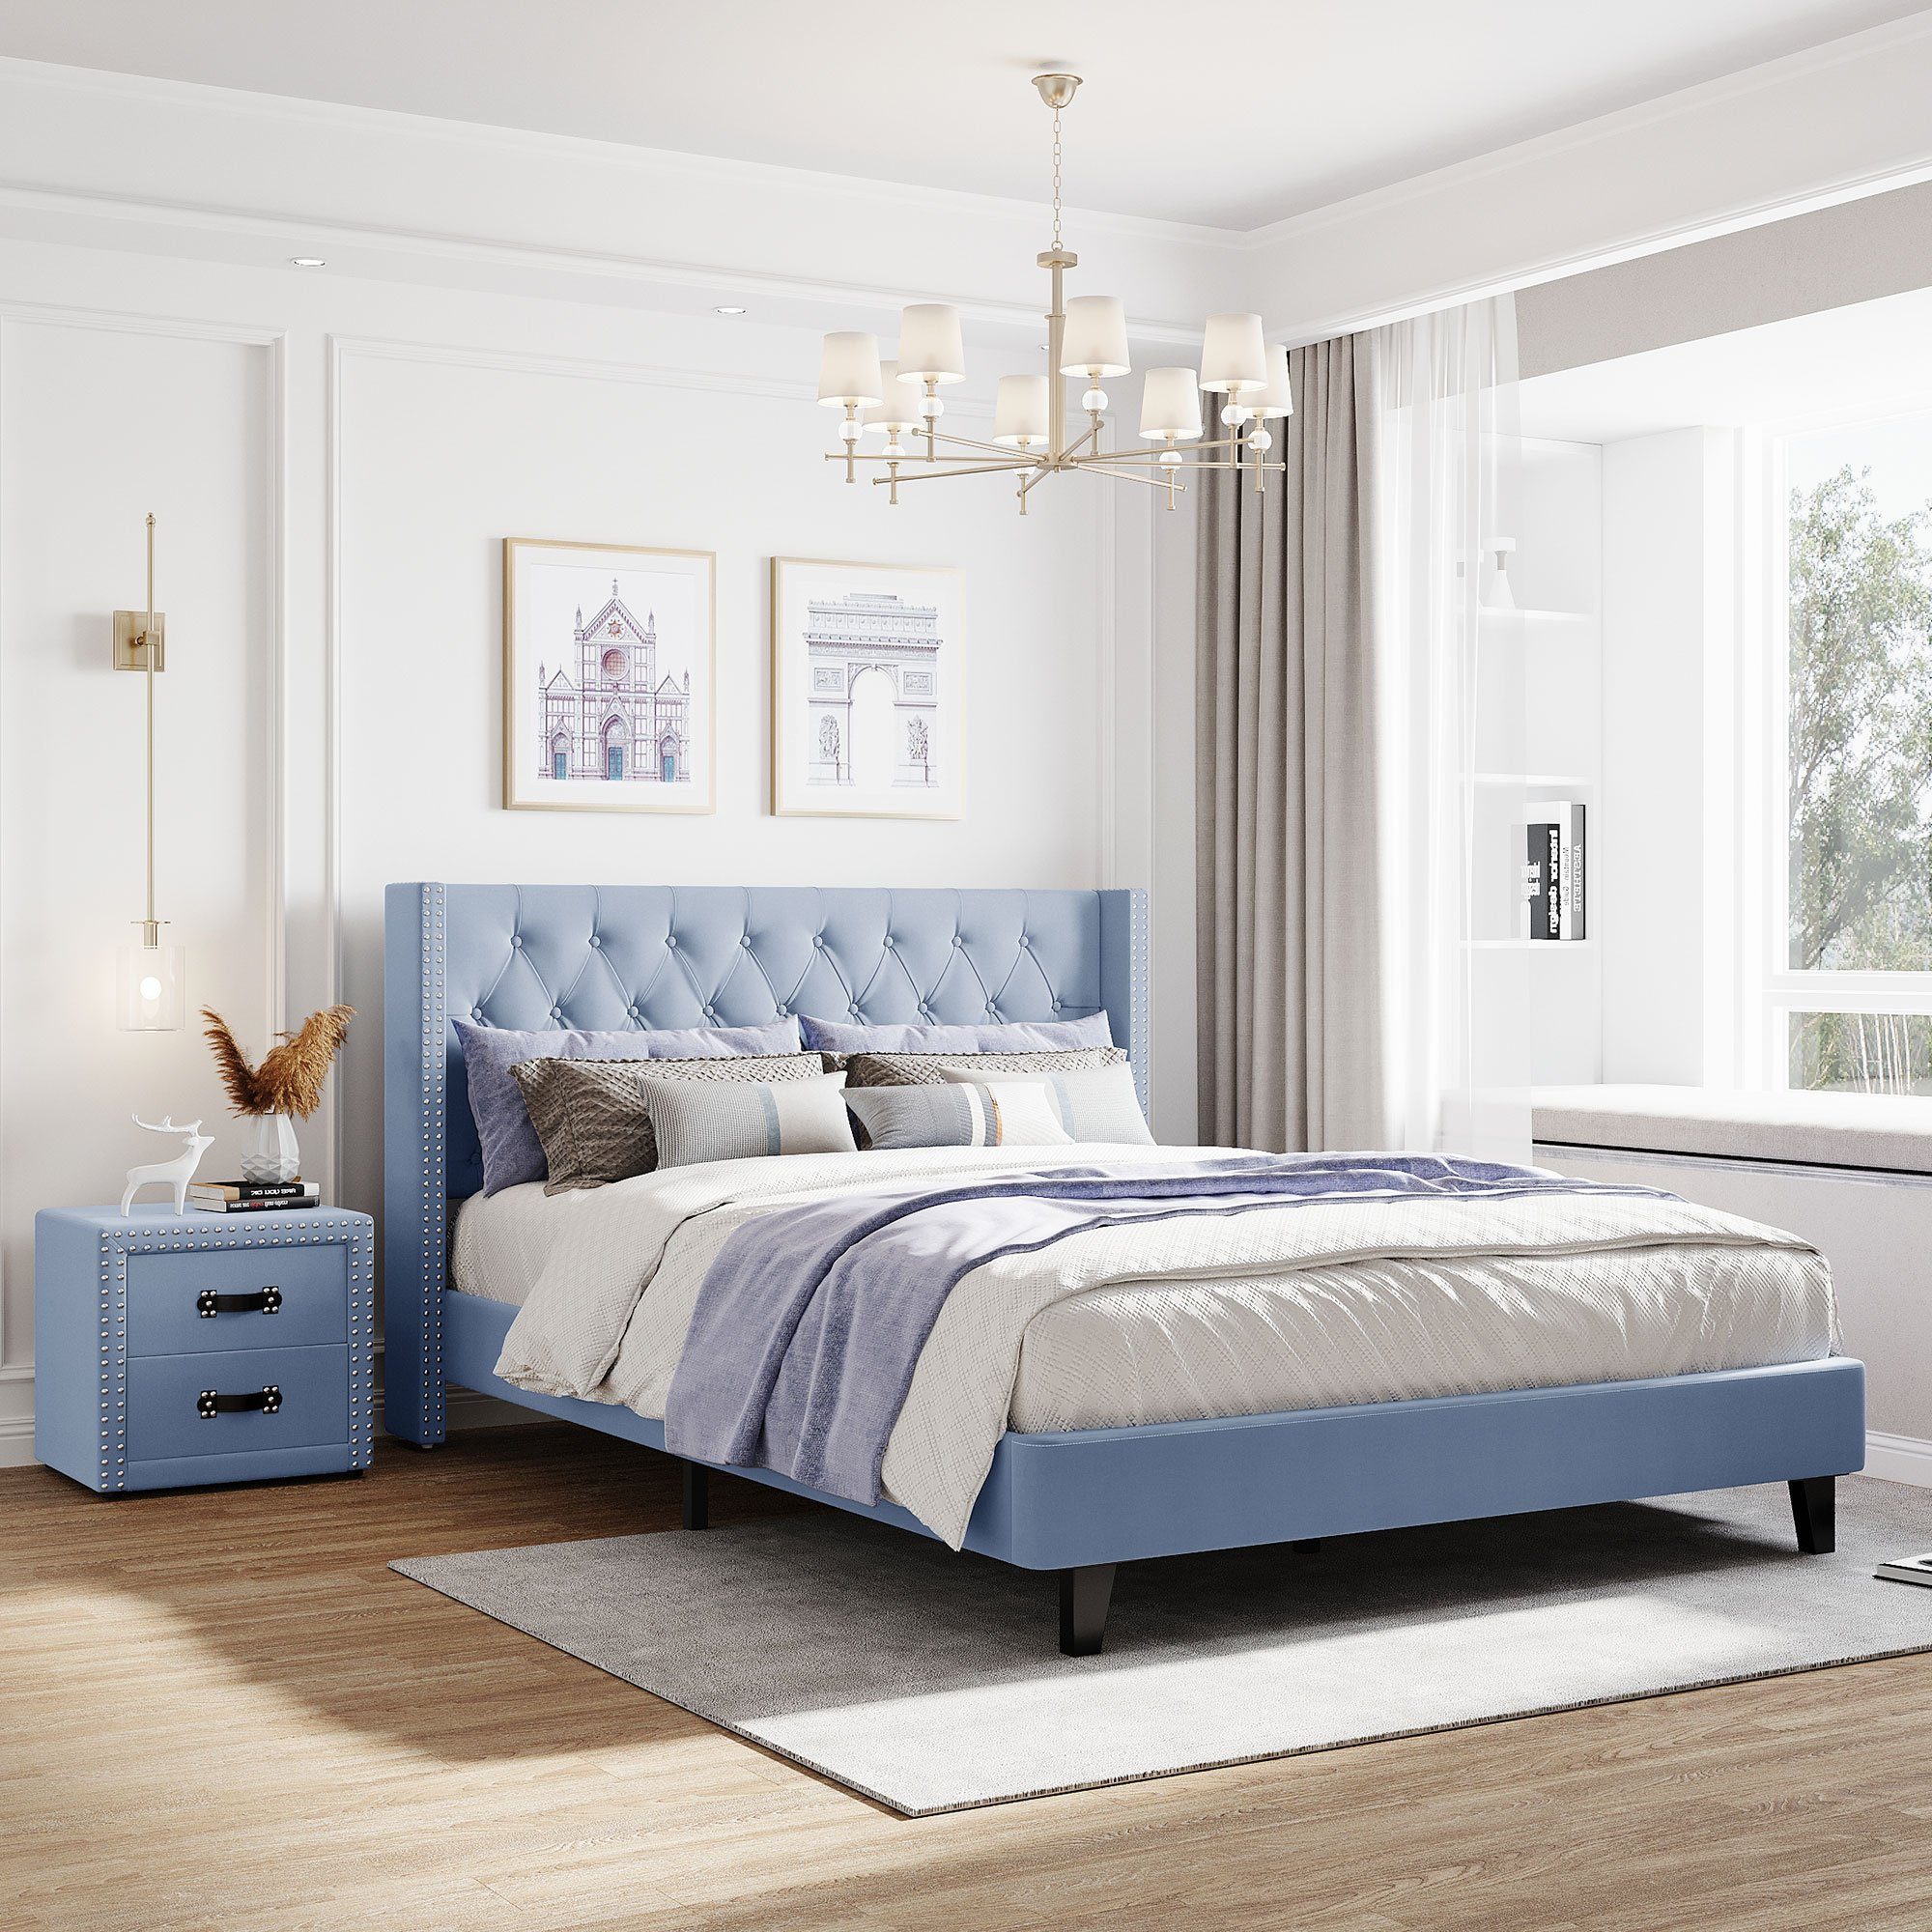 Odikalo Schlafzimmer-Set Doppelbett Polsterbett blau Nachttische 2/1 140x200 + Schubladen m.2